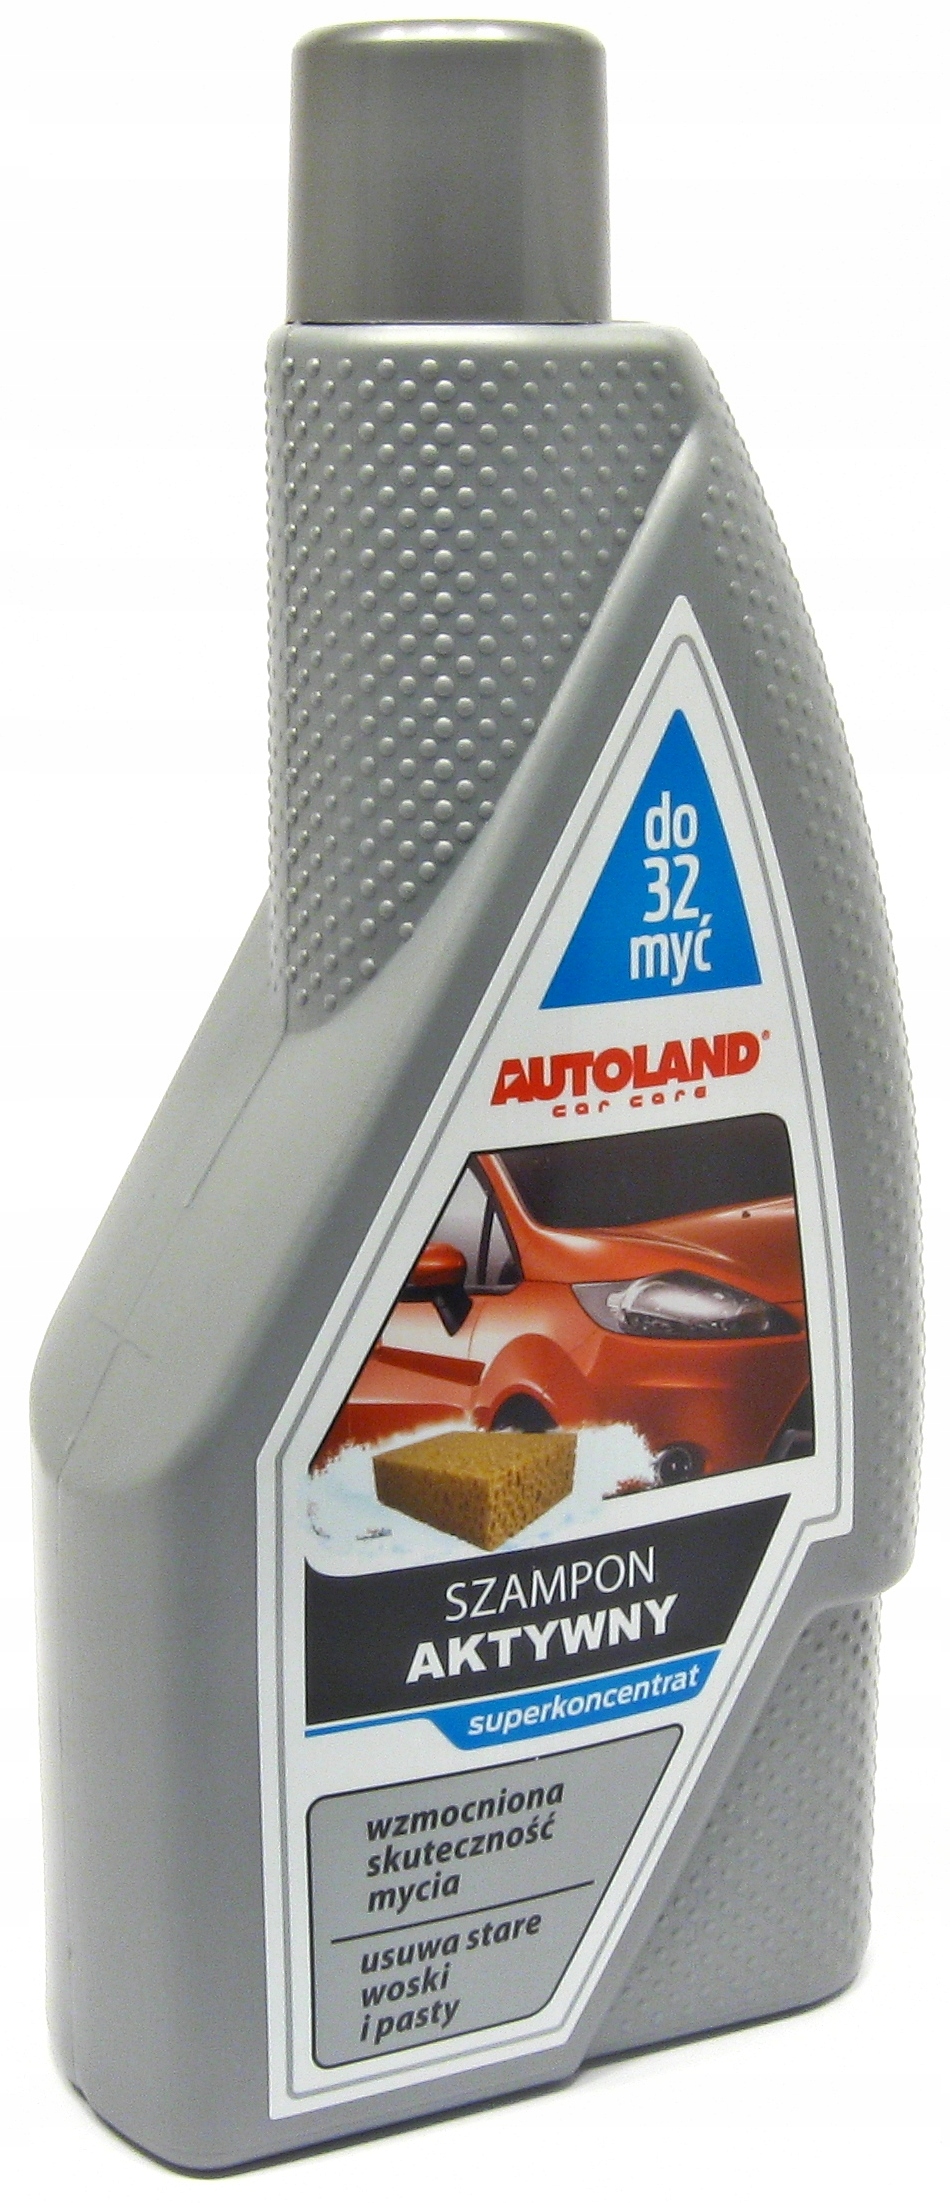 autoland szampon z woskiem 950ml koncentrat